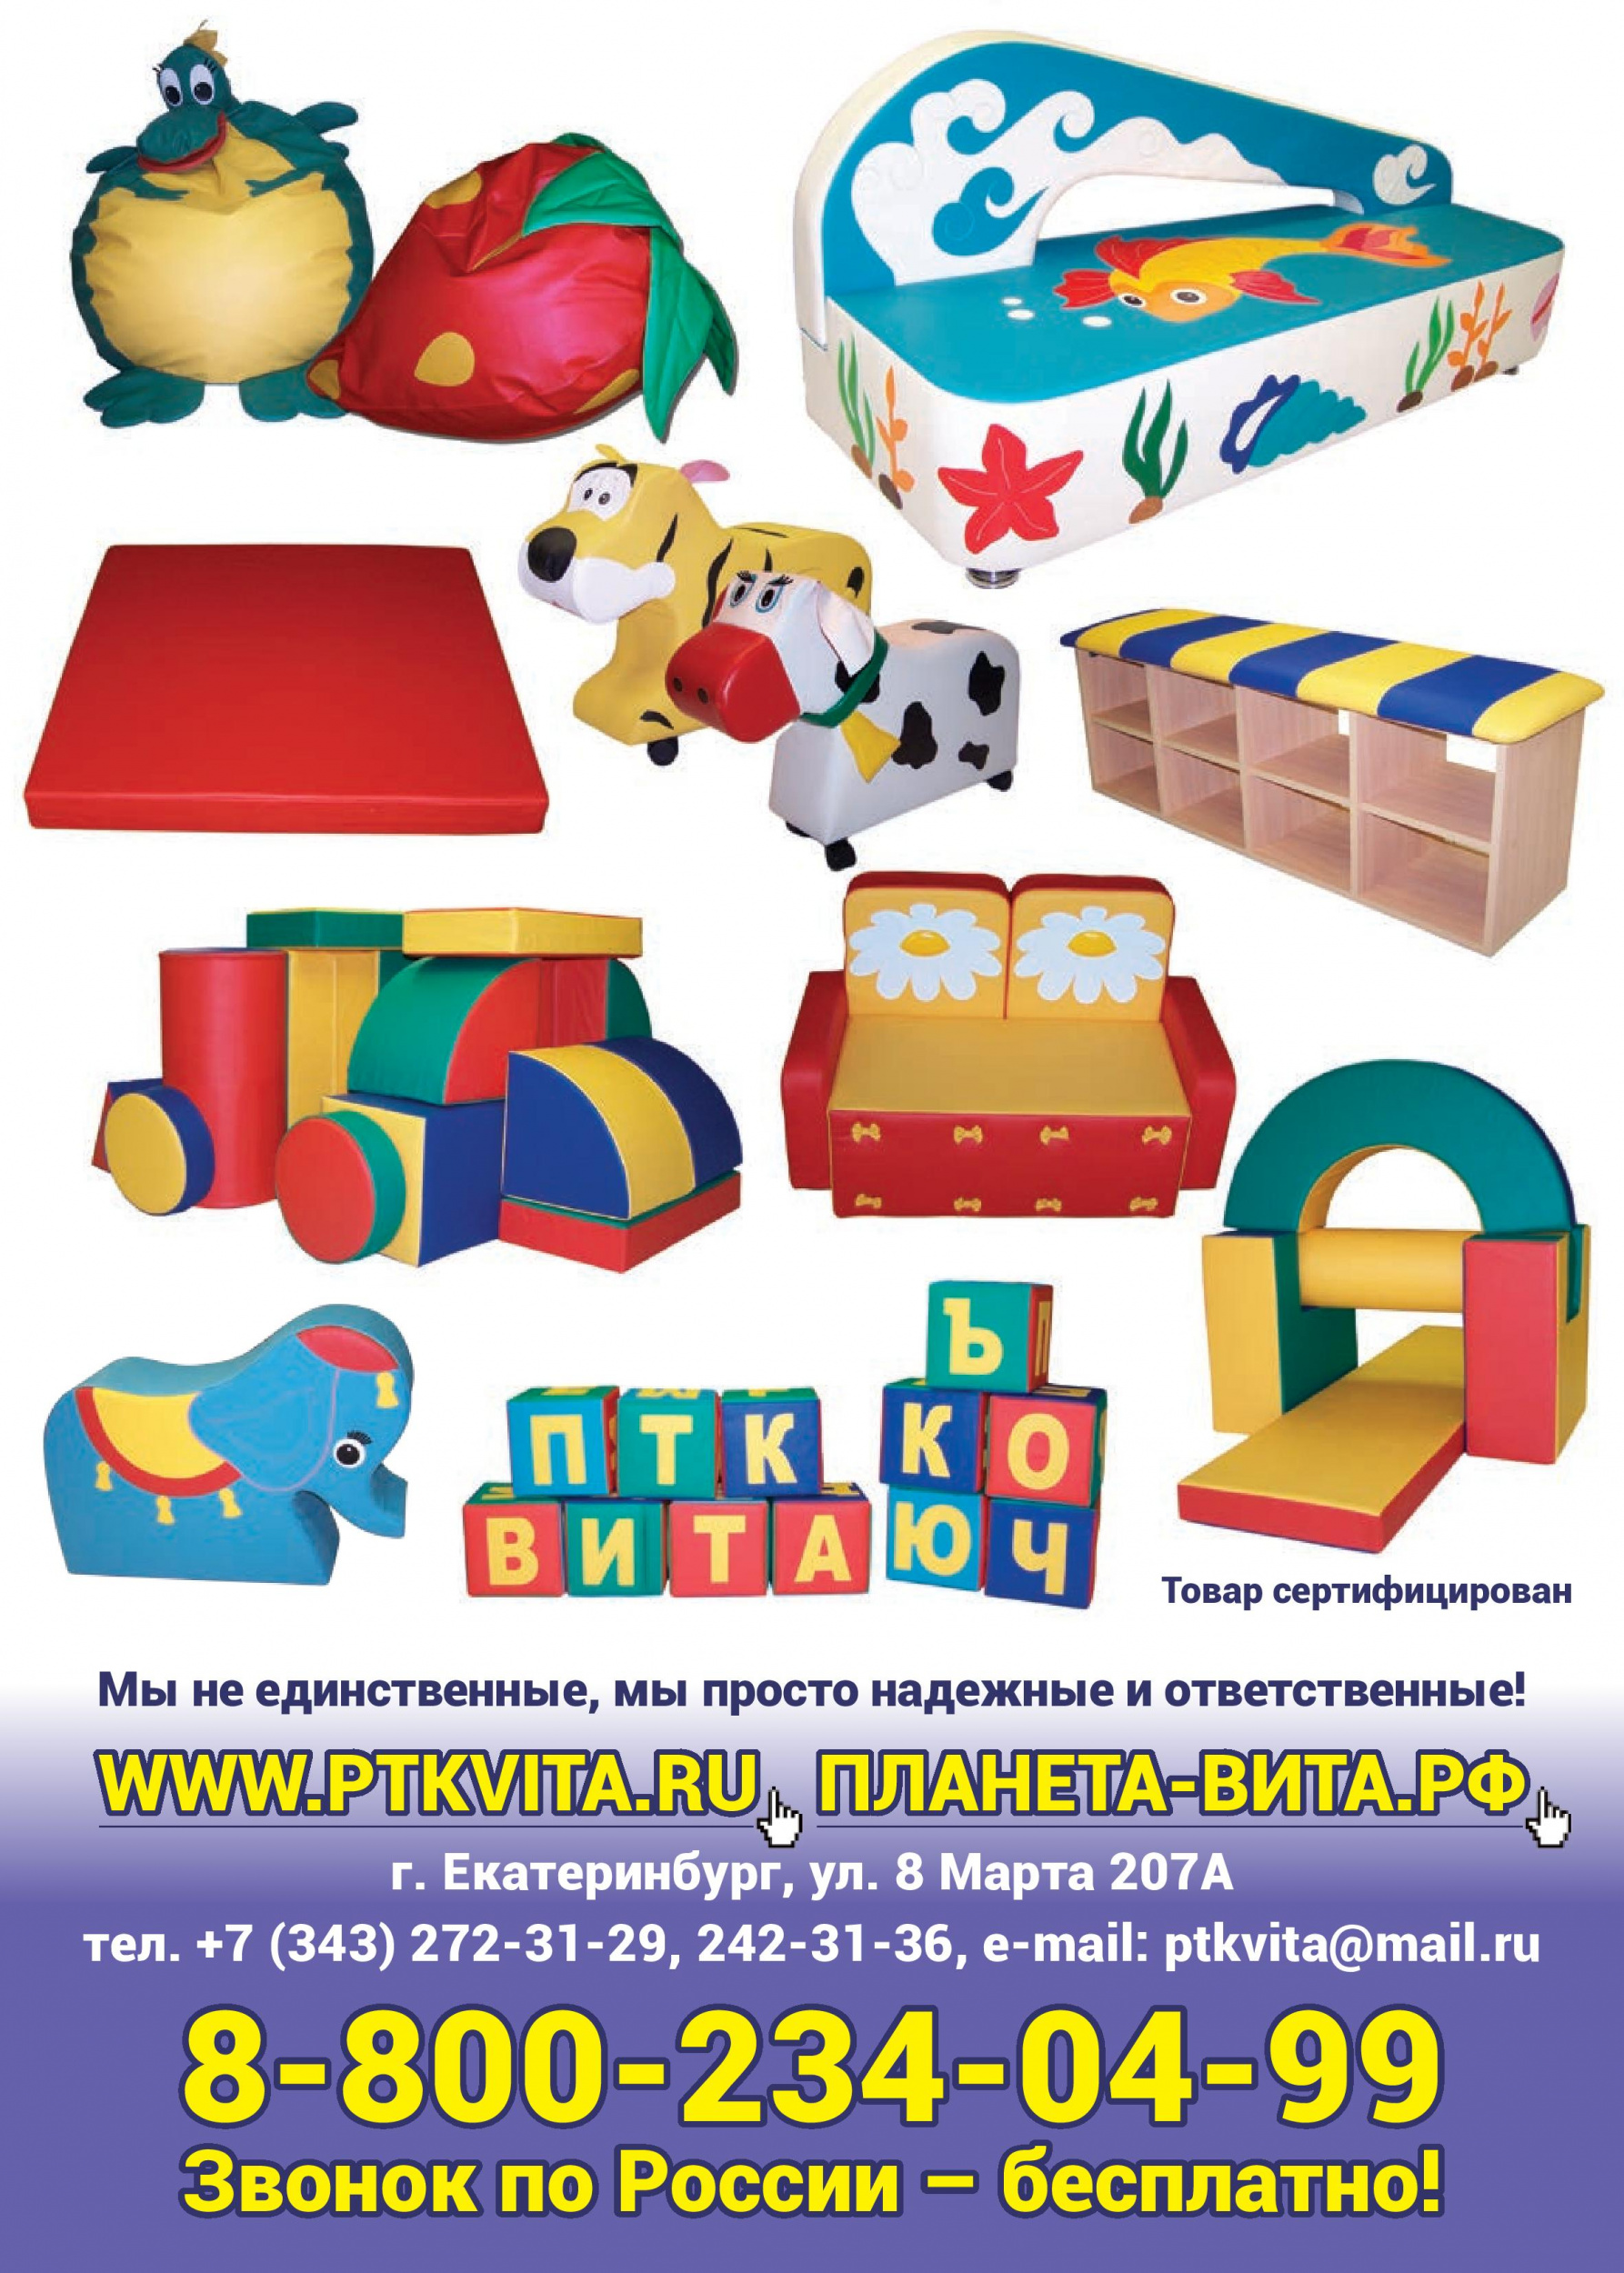 Российский производитель детской игровой мебели и оборудования